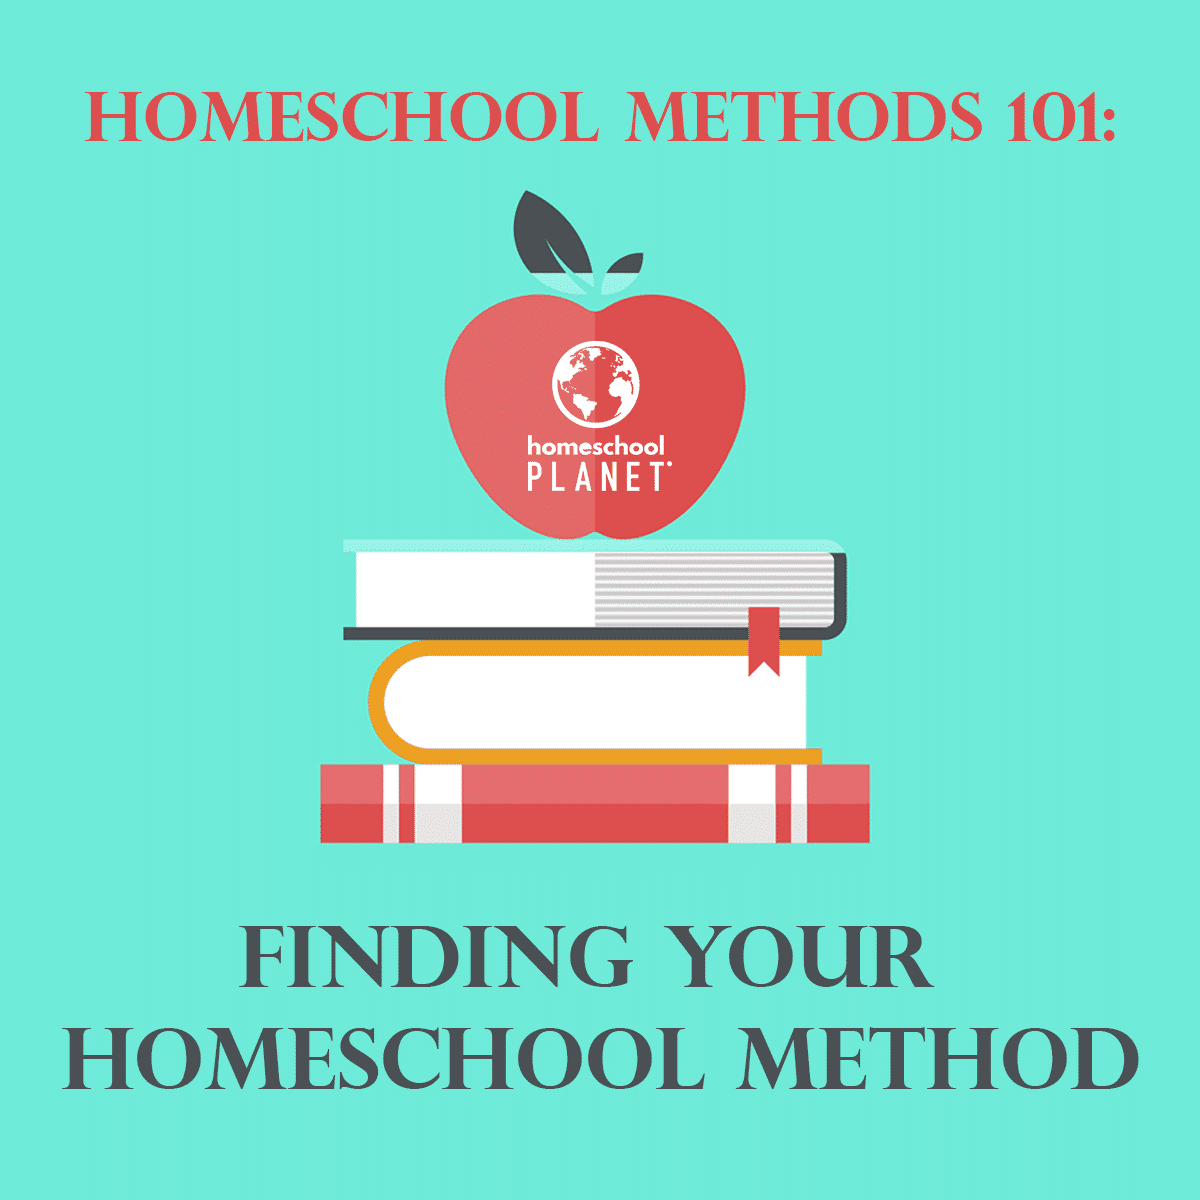 Homeschool Methods 101: Finding Your Homeschool Method